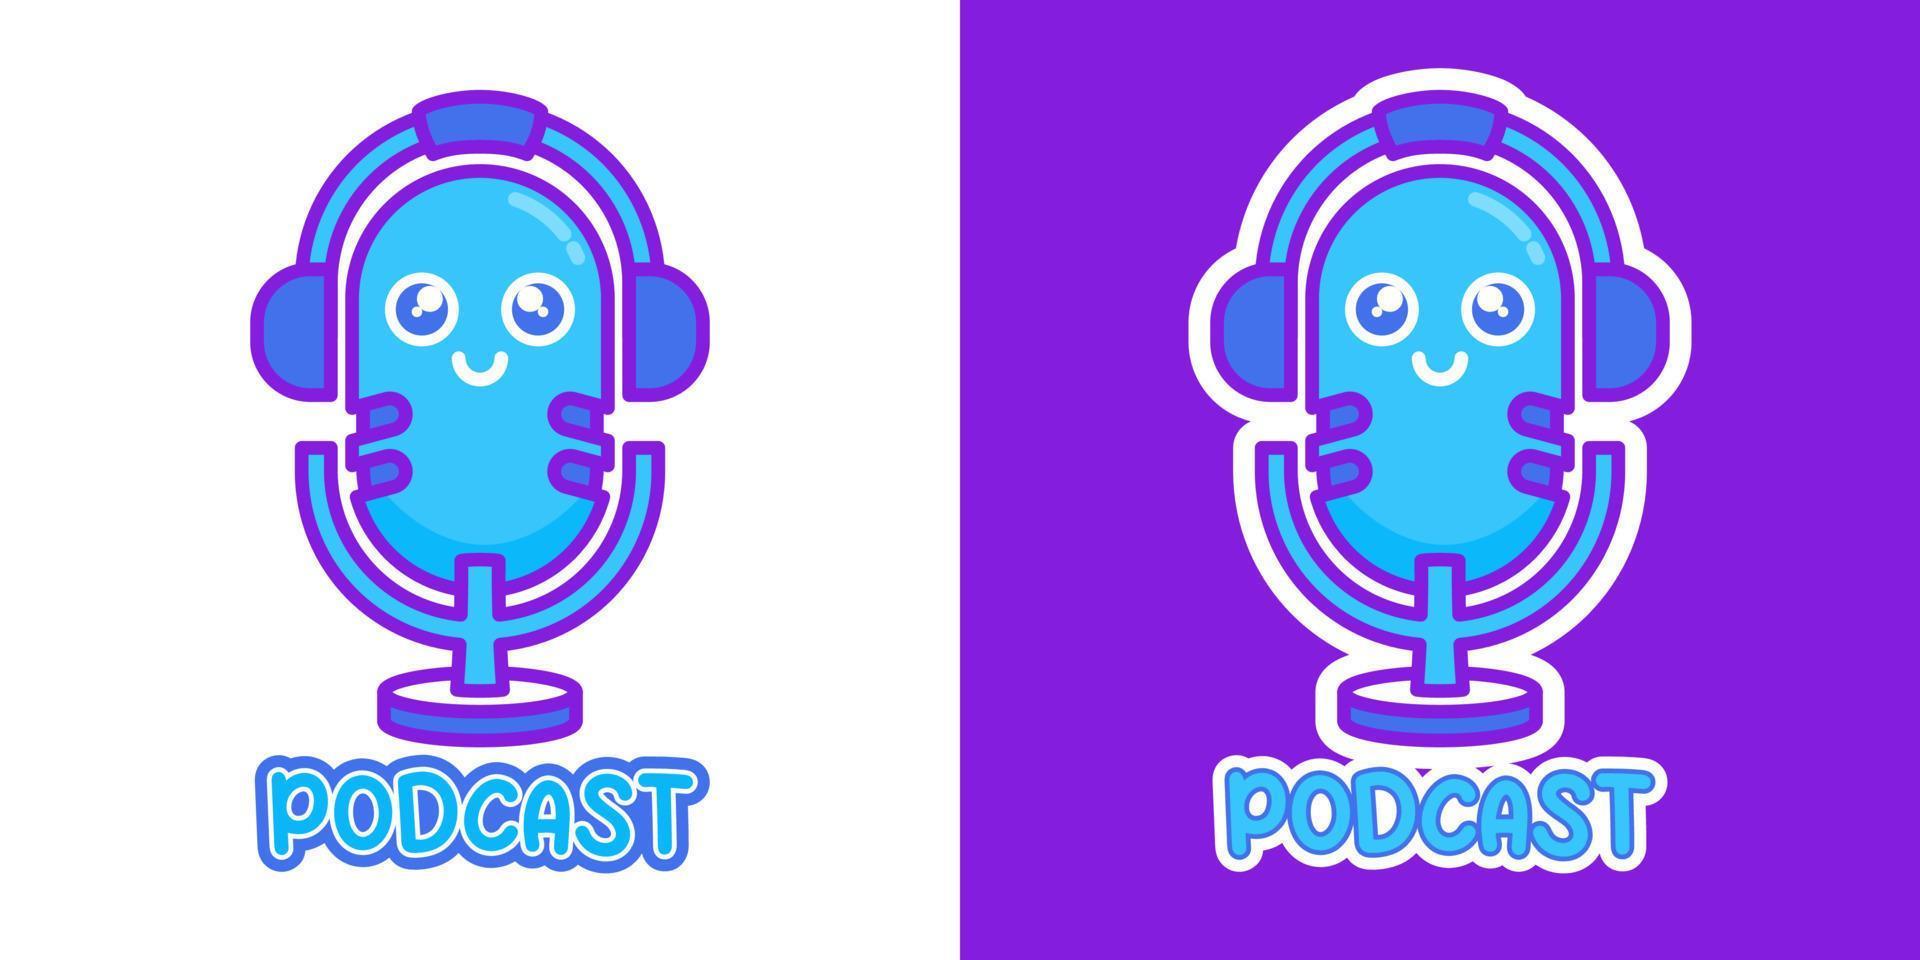 podcast mic audio niedlich blau lila kawaii cartoon vektor symbol konzept. flacher illustrationsstil für maskottchen, aufkleber, logo und symbol.